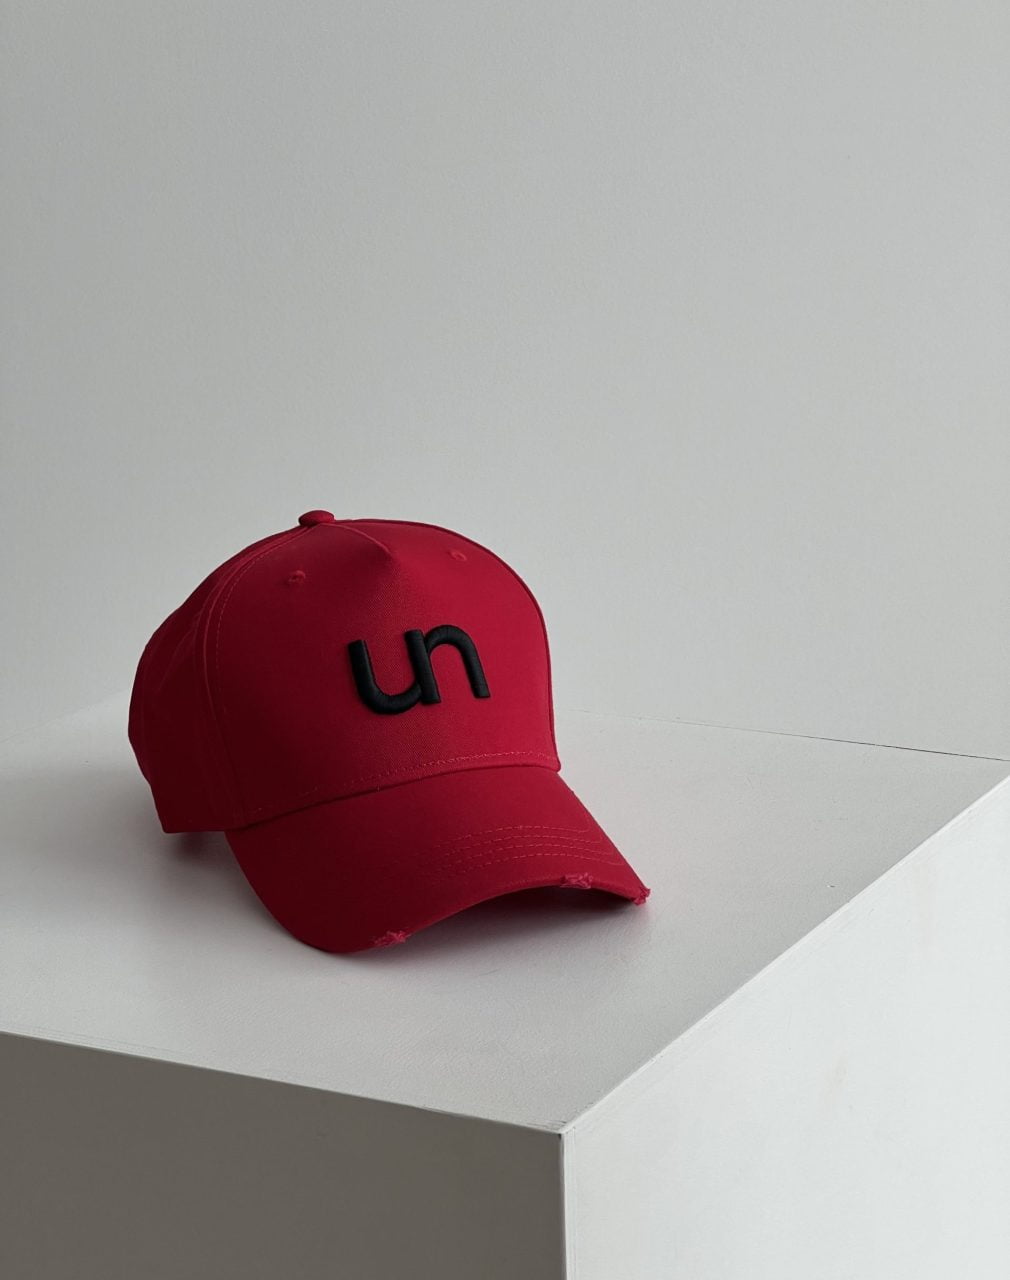 raudona juoda kepurė su unlabel logotipu | unlabel